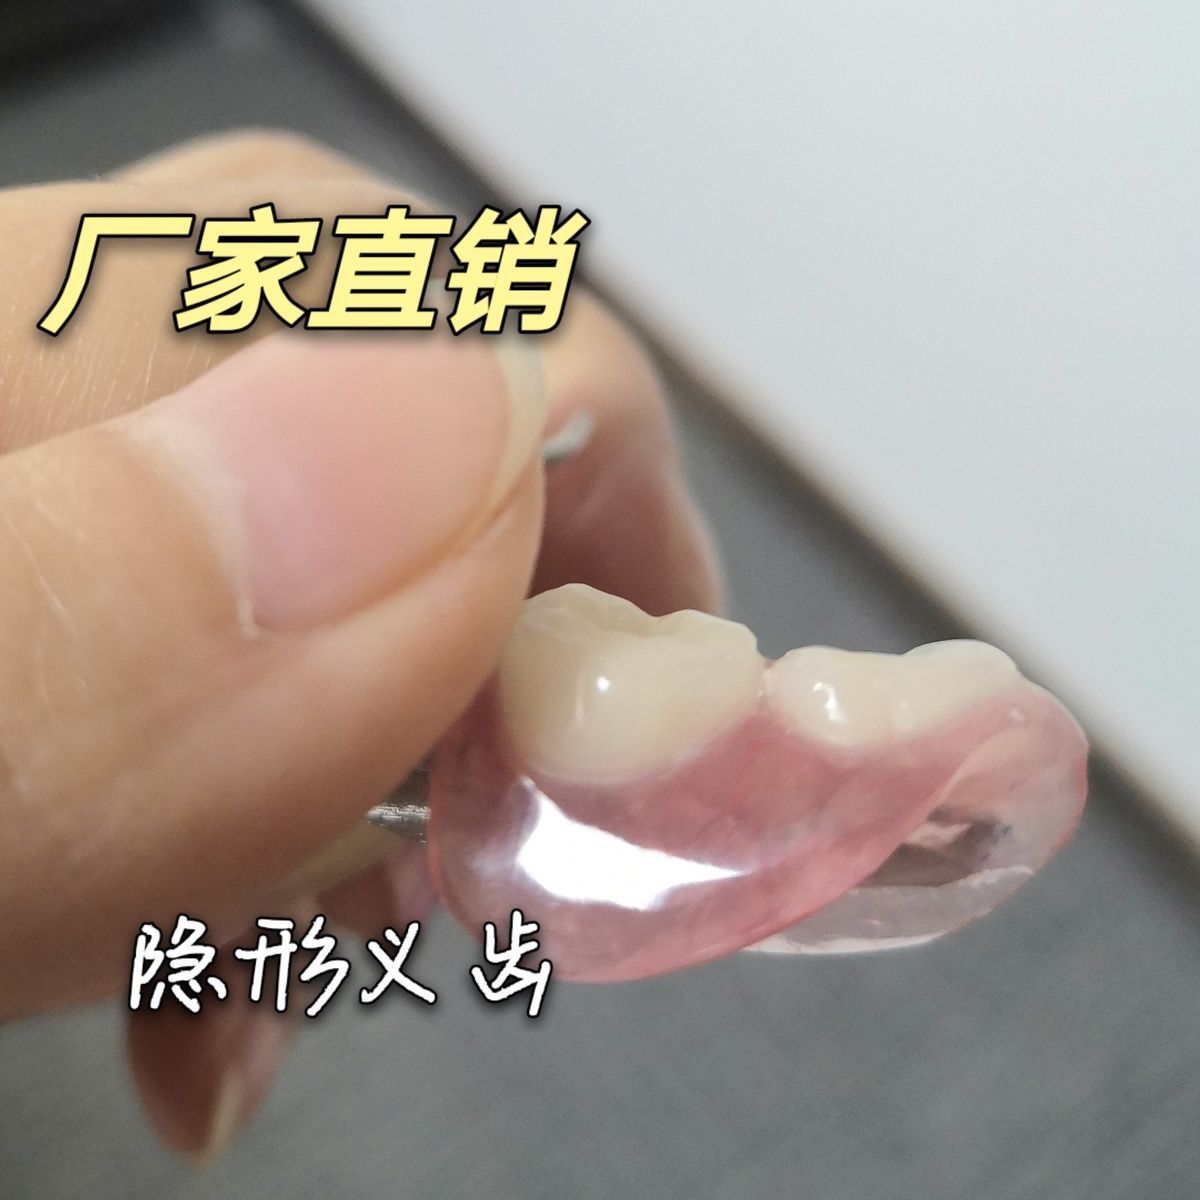 生产隐形义齿 树脂活动假牙 加工隐形牙假牙义齿活动牙种植临时牙【3